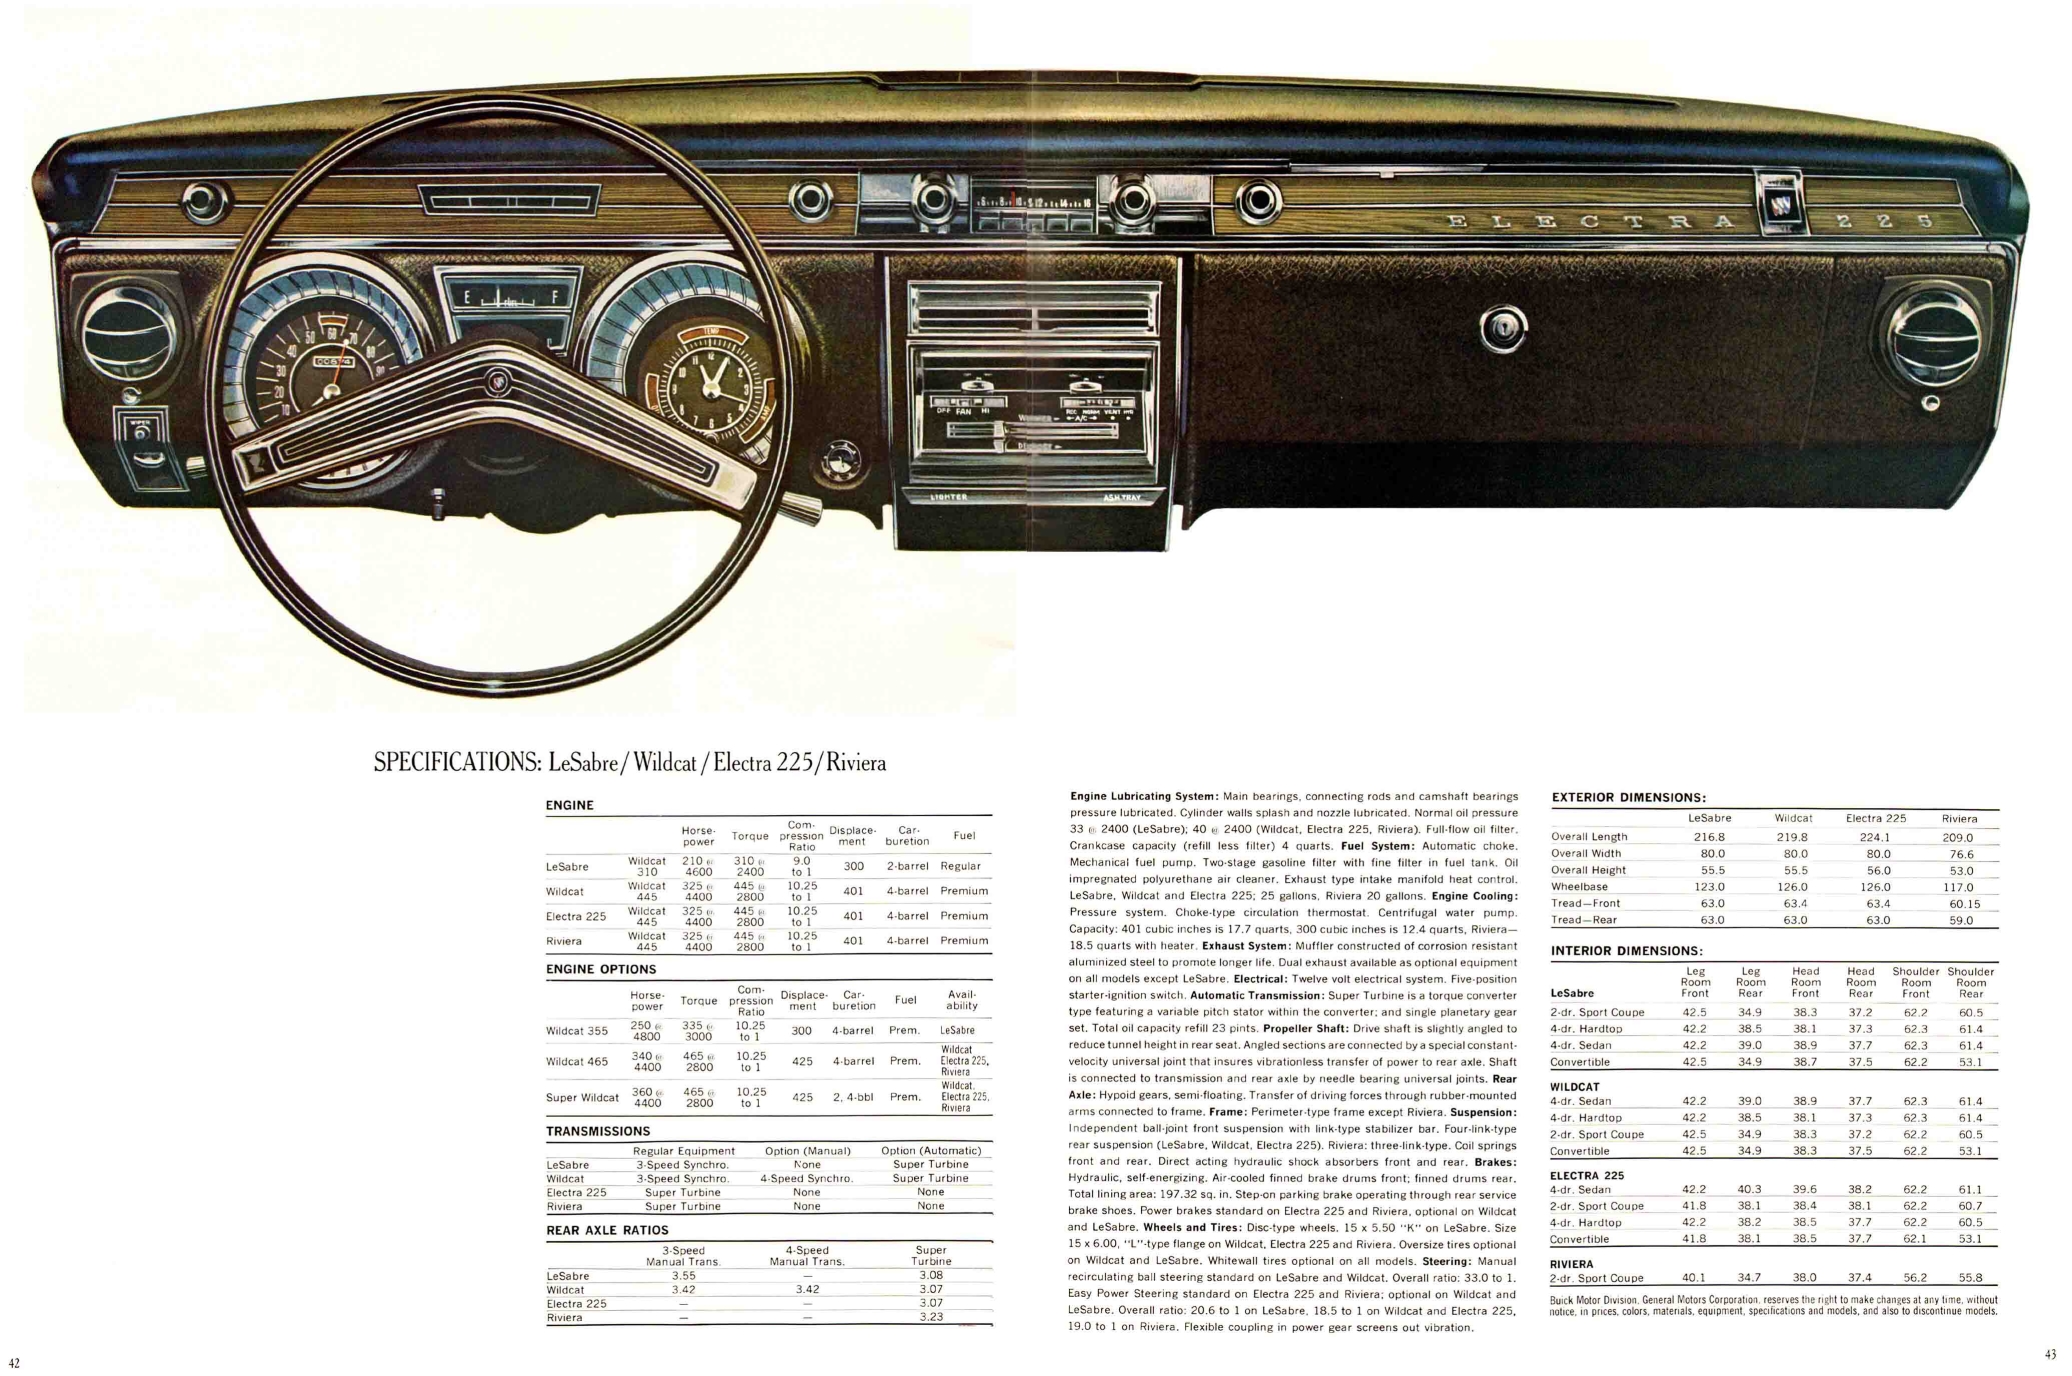 1965 Buick Full Line Prestige-42-43